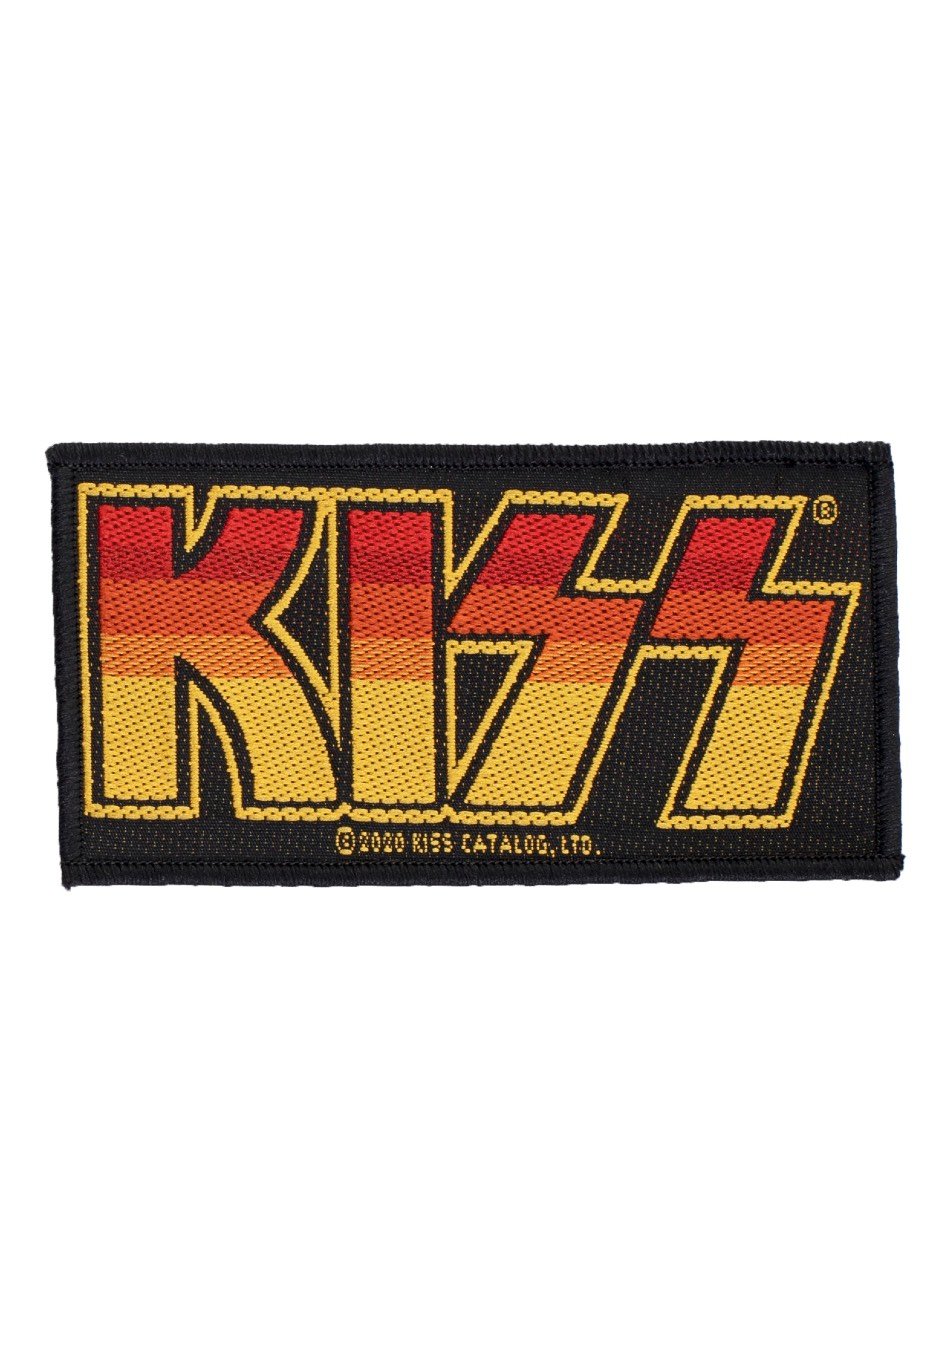 Kiss - Logo - Patch